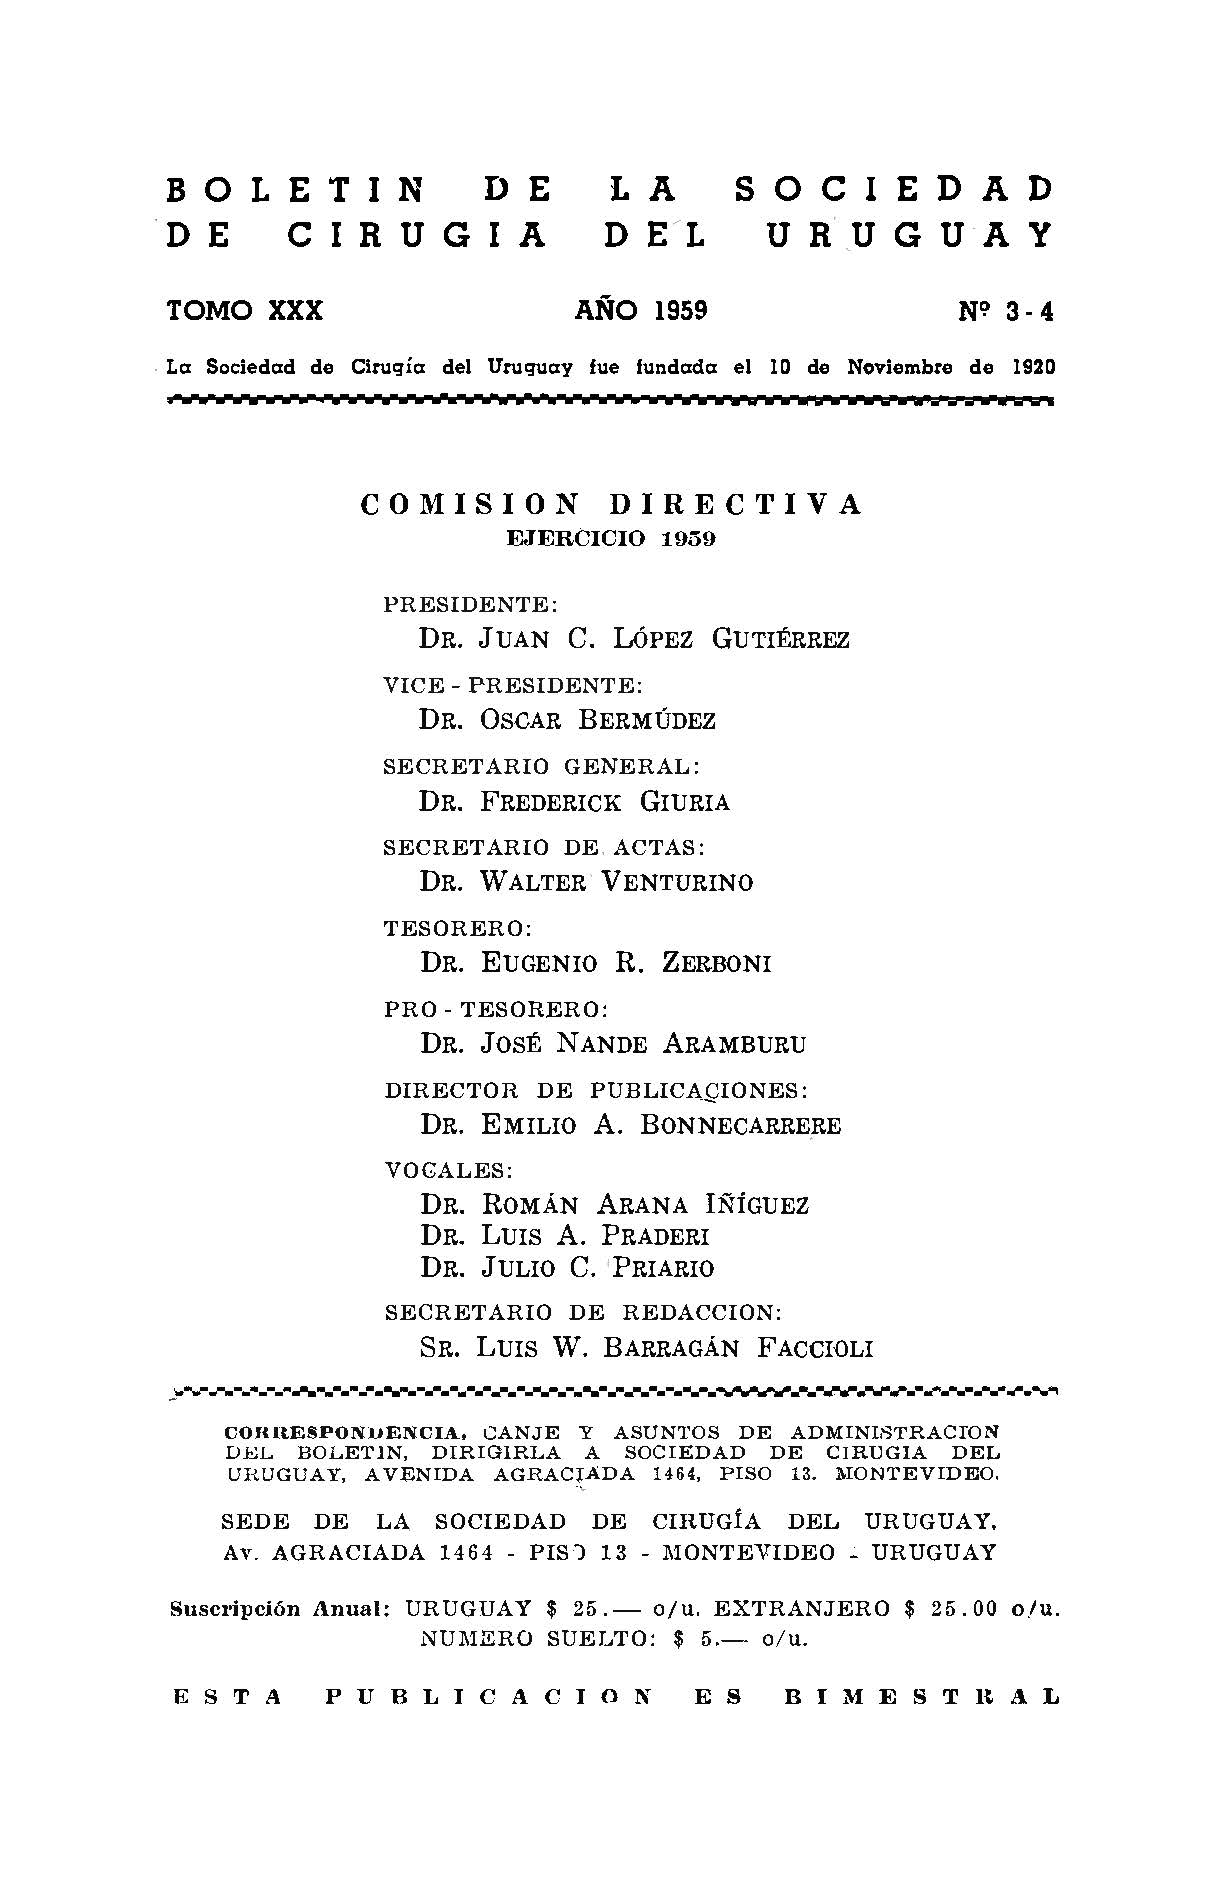 					Ver Vol. 30 Núm. 3-4 (1959): Boletín de la Sociedad de Cirugía del Uruguay
				